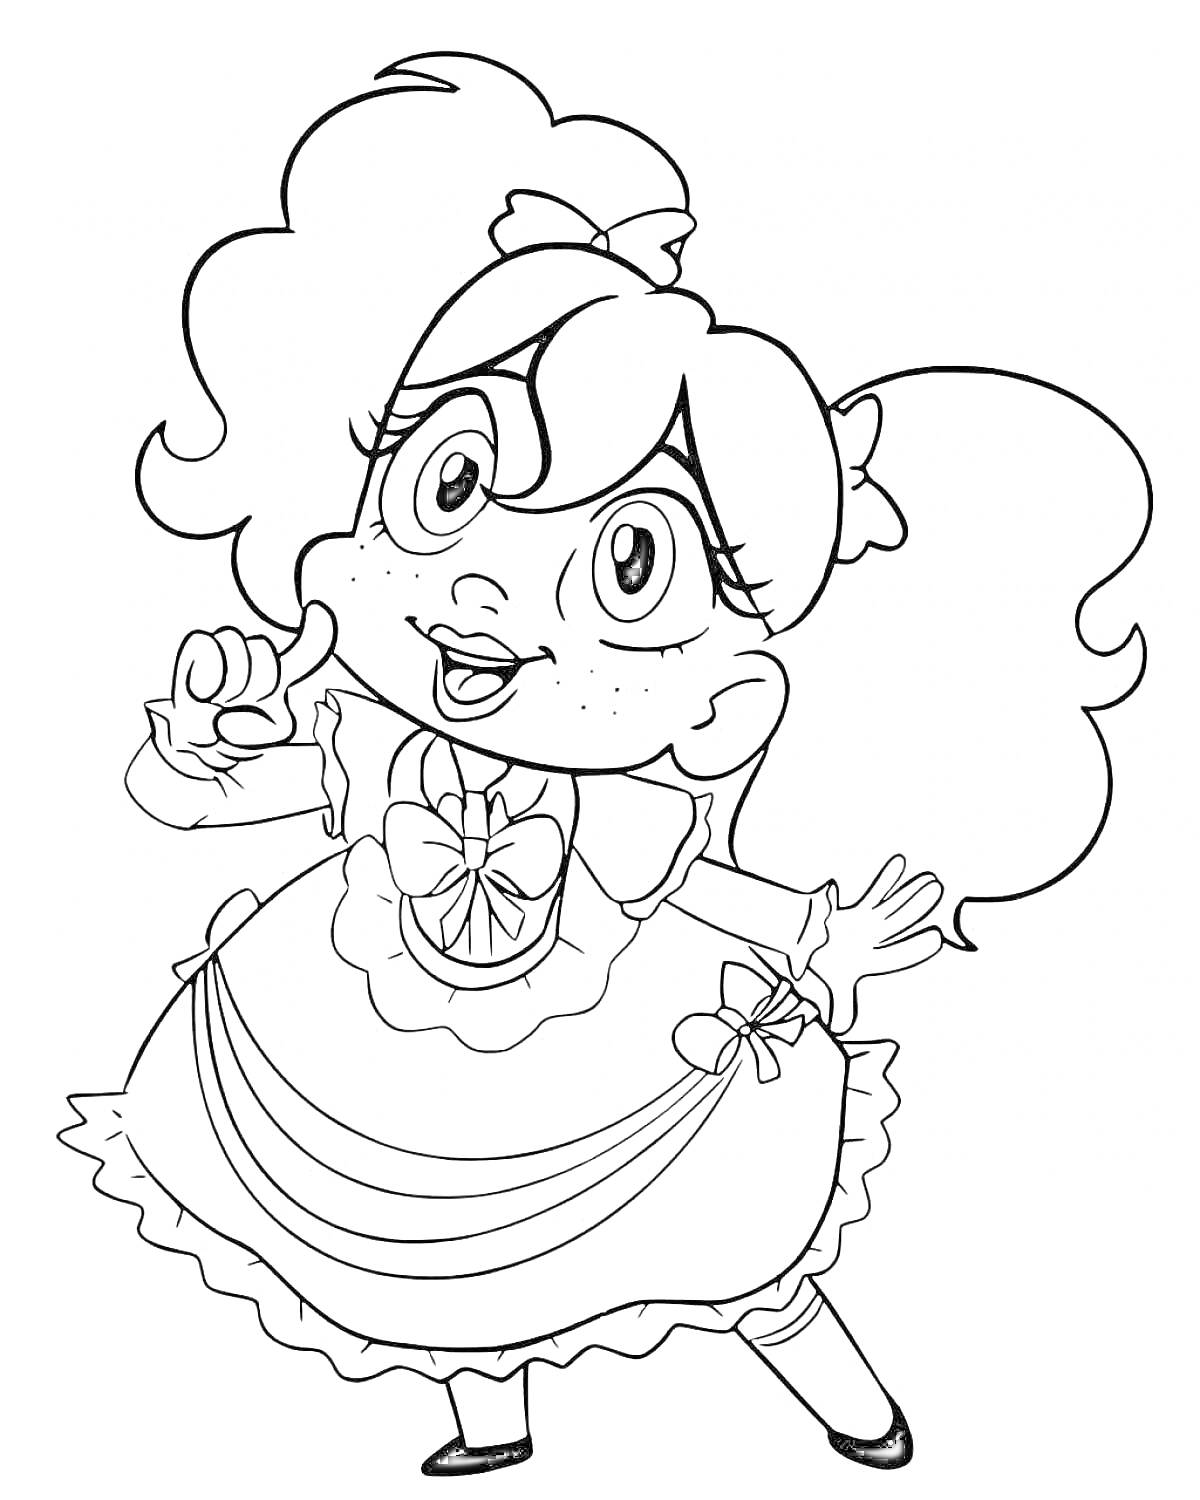 Раскраска Девочка с большими глазами и завитыми волосами в бантах, одетая в платье с рюшами и крупным бантом на талии